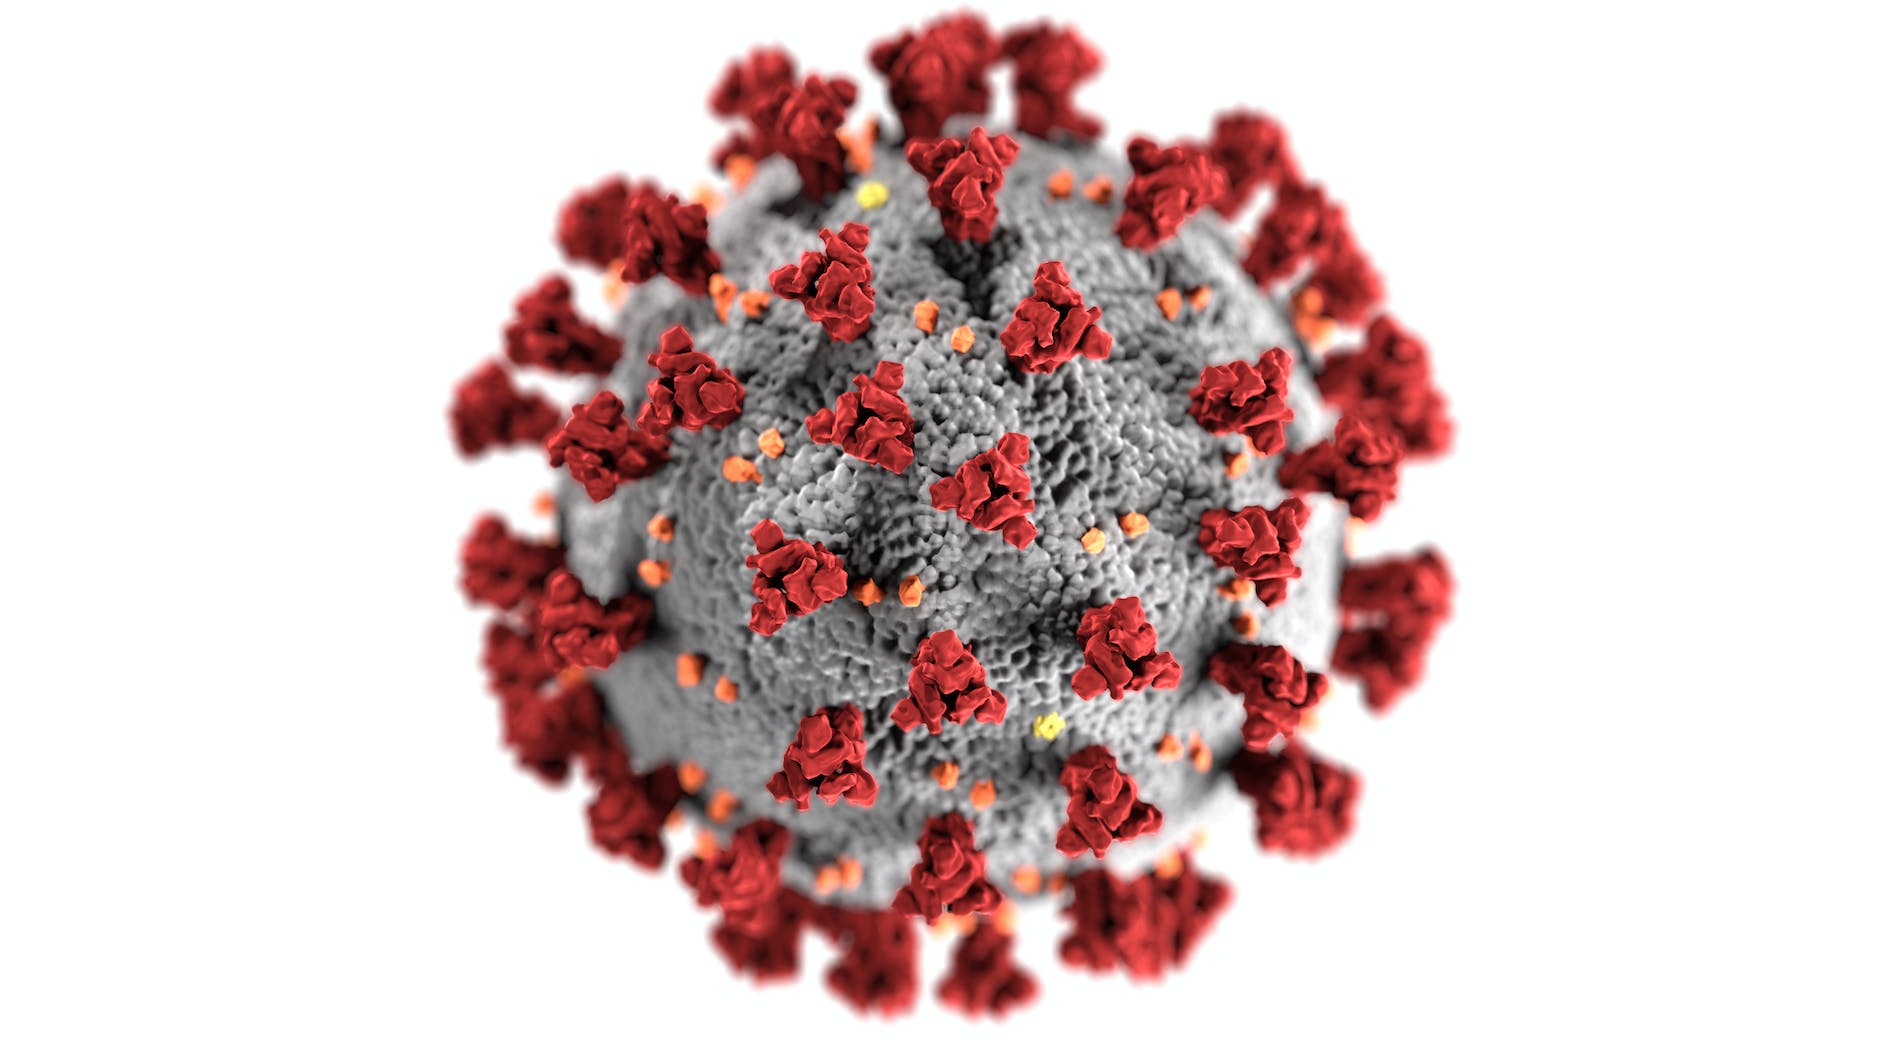 Filastrocca sul coronavirus di Roberto Piumini